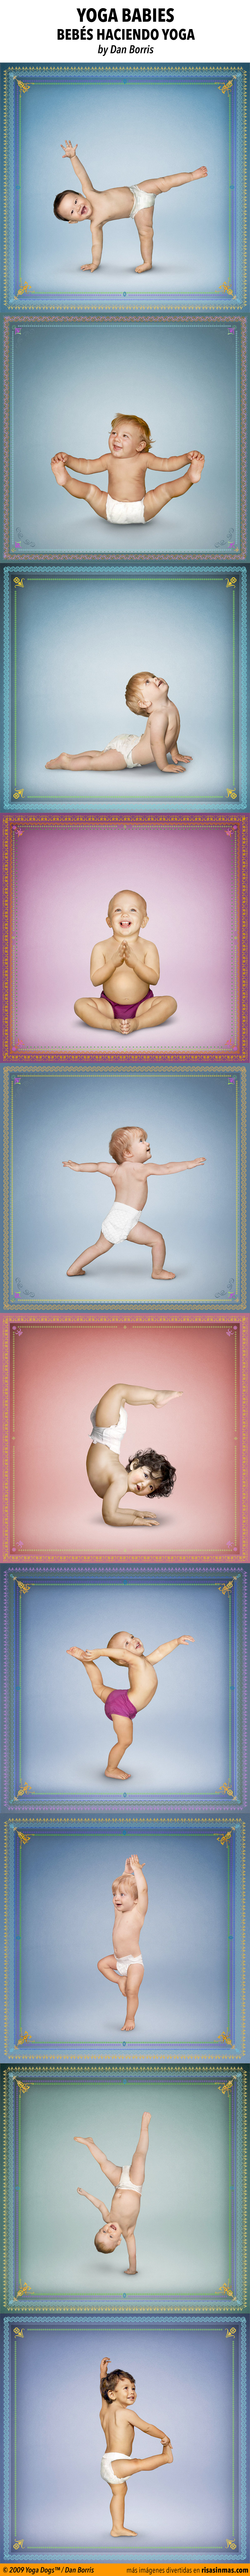 Yoga babies, bebés haciendo yoga